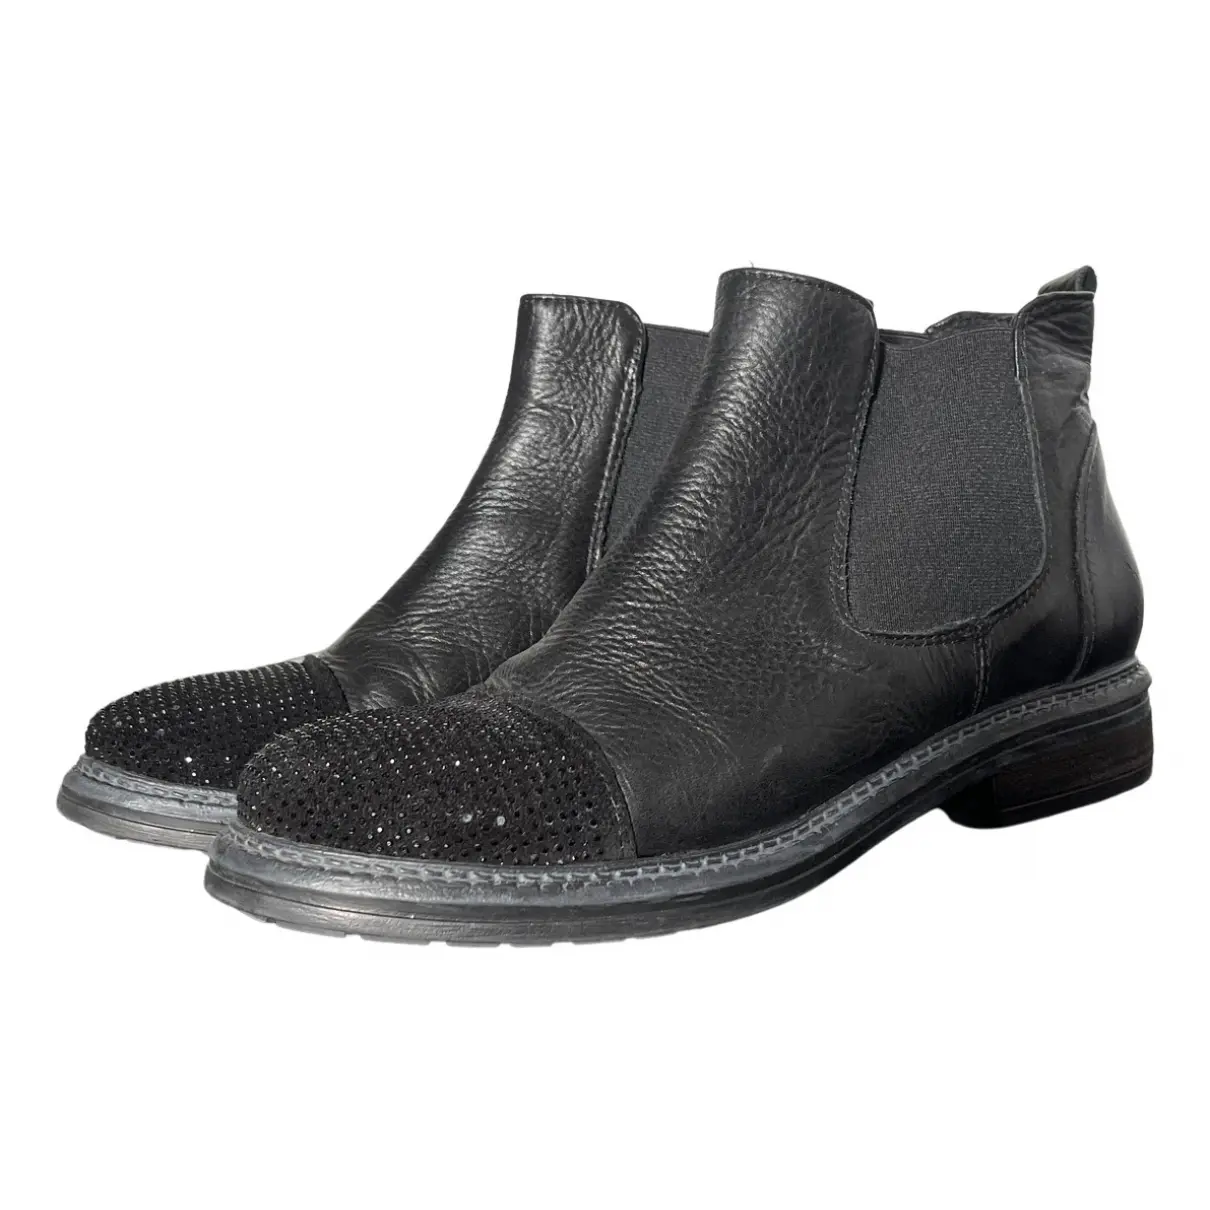 Glitter ankle boots Chiarini Bologna